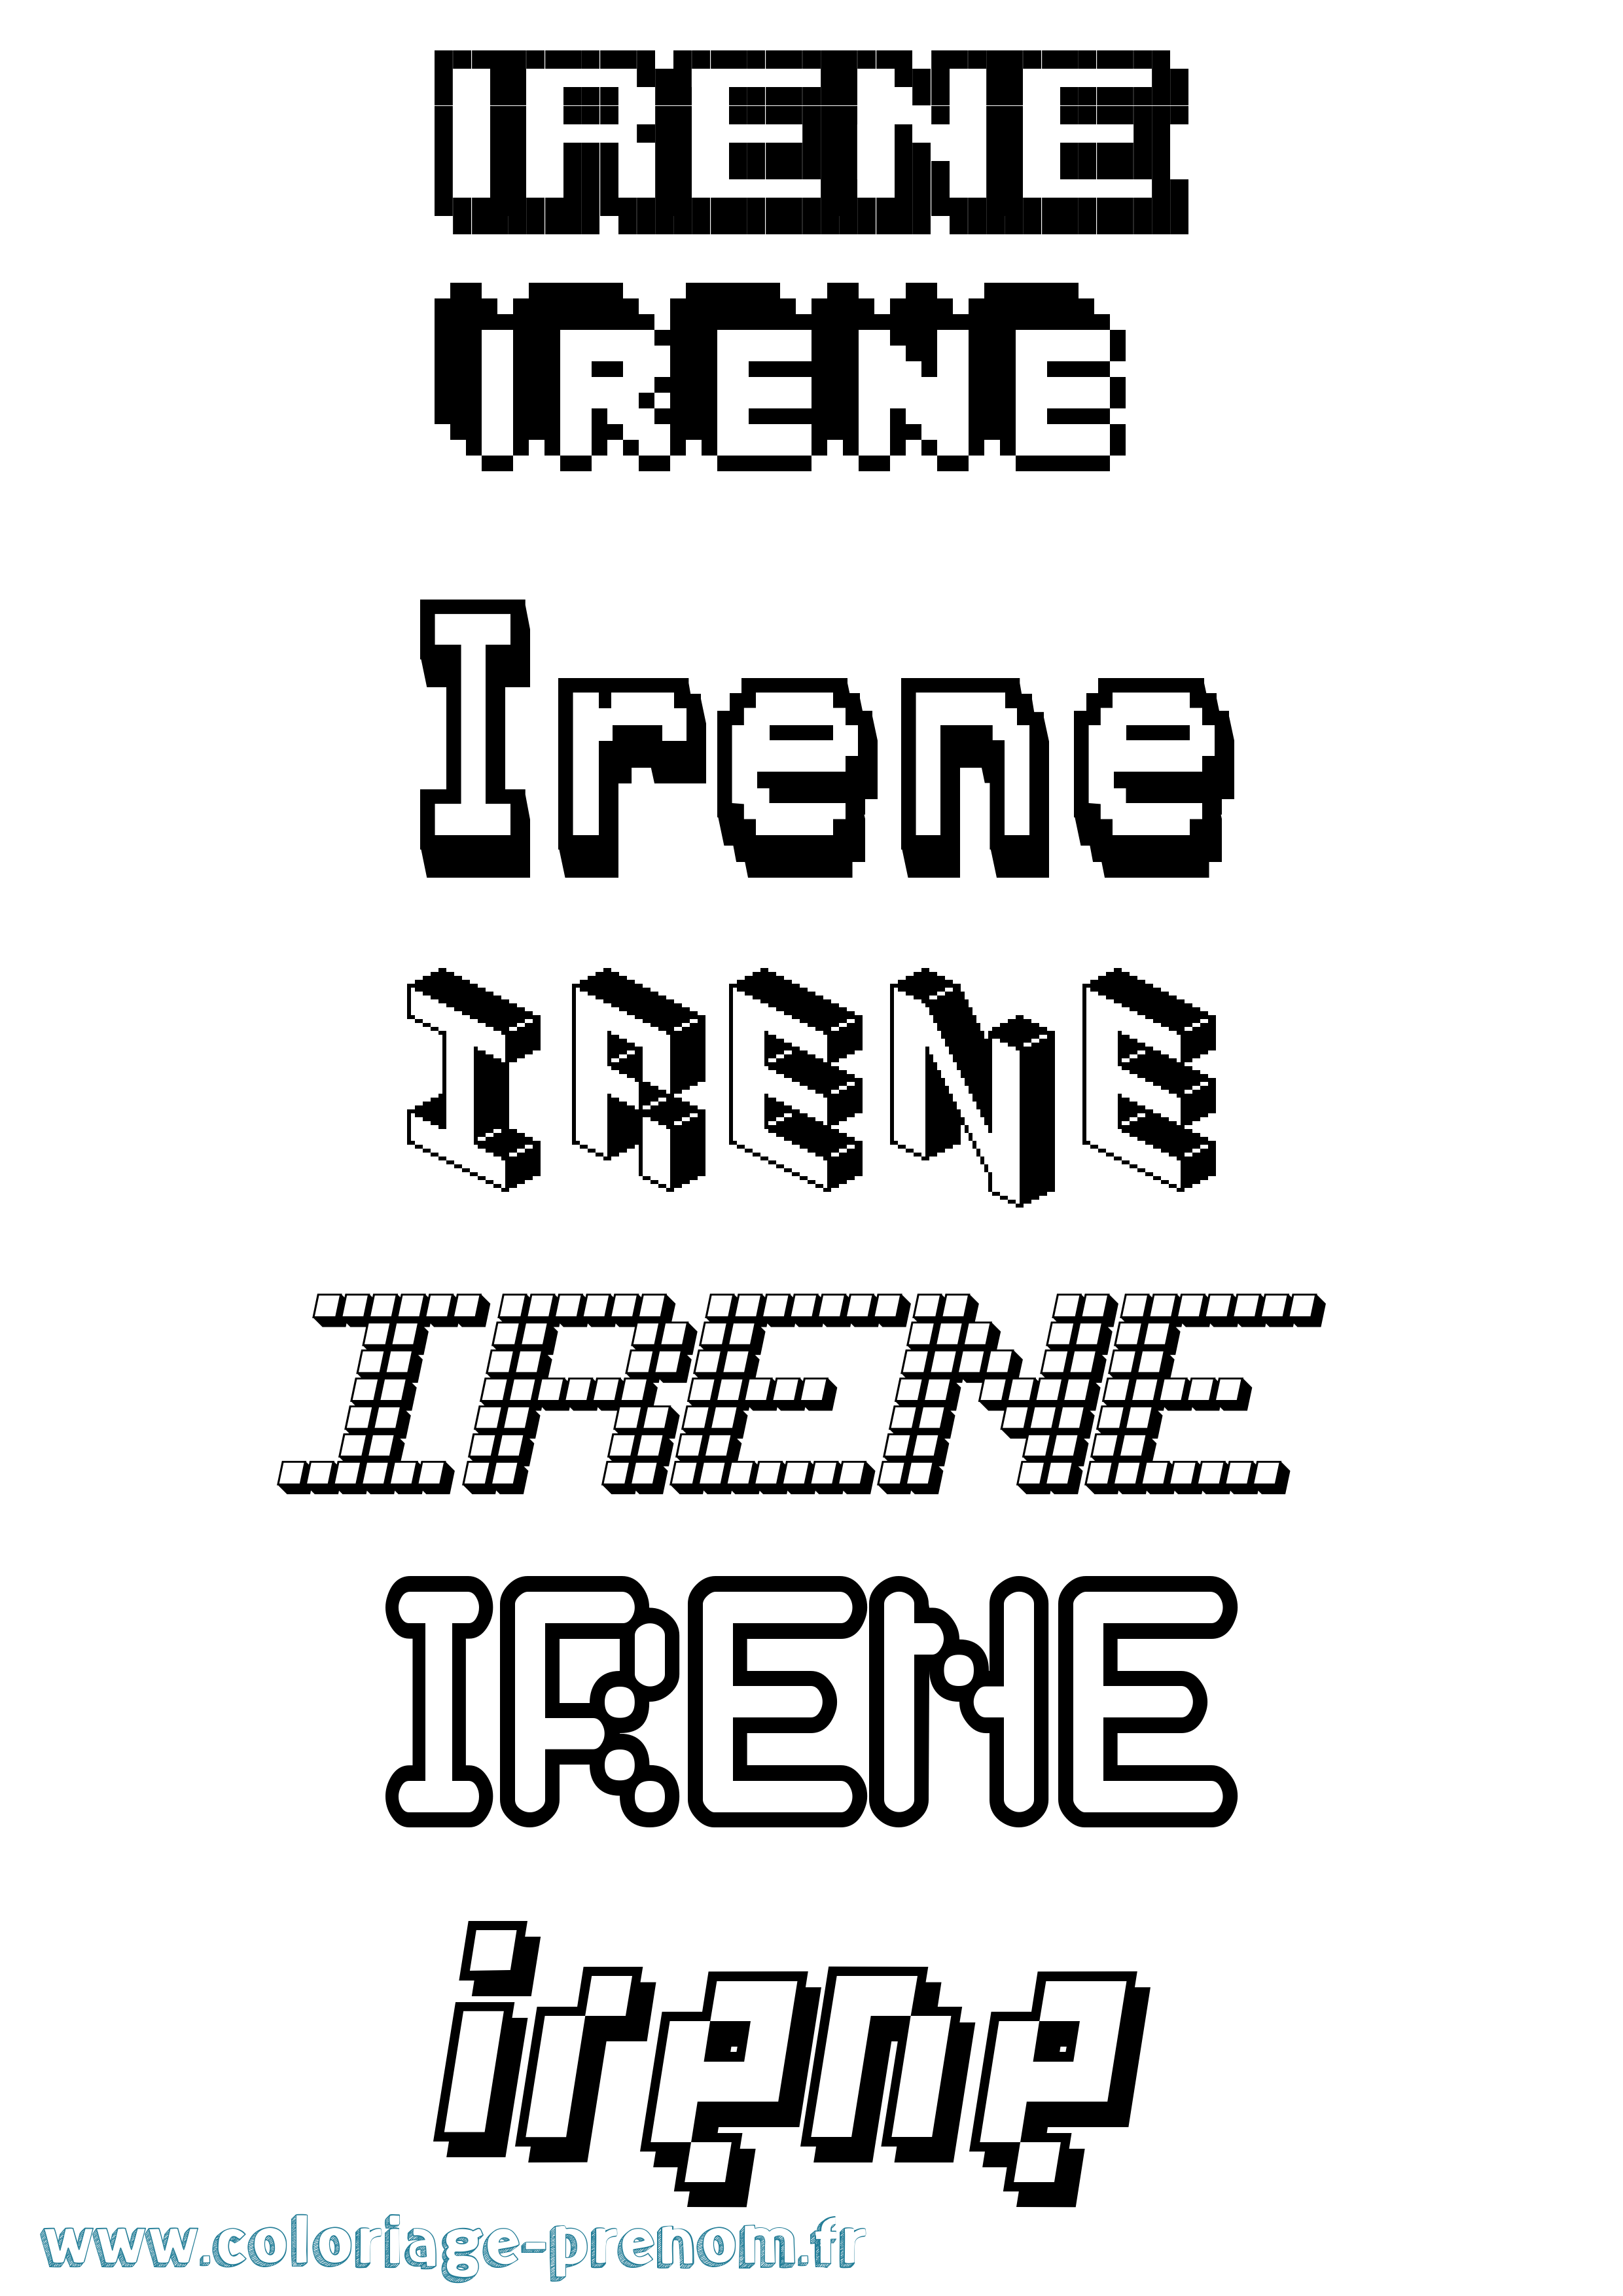 Coloriage prénom Irene Pixel